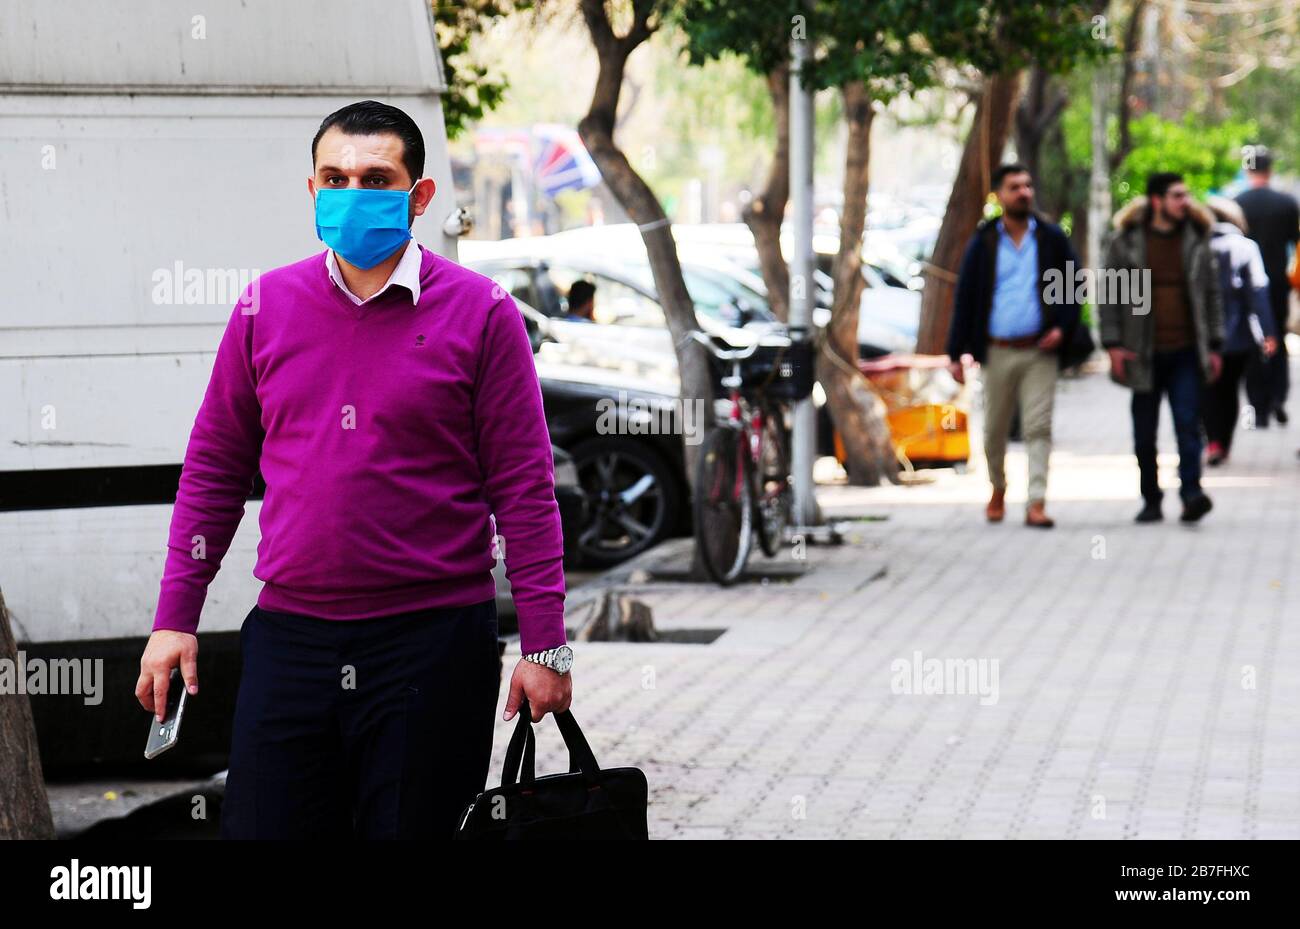 Damasco, Siria. 15 de marzo de 2020. Un peatón con máscara camina por una calle en Damasco, Siria, el 15 de marzo de 2020. El gobierno sirio ha adoptado varias medidas para proteger a su pueblo de las amenazas del coronavirus. Hasta ahora, Siria no ha notificado ningún caso de infección por COVID-19. Crédito: Ammar Safarjalani/Xinhua/Alamy Live News Foto de stock